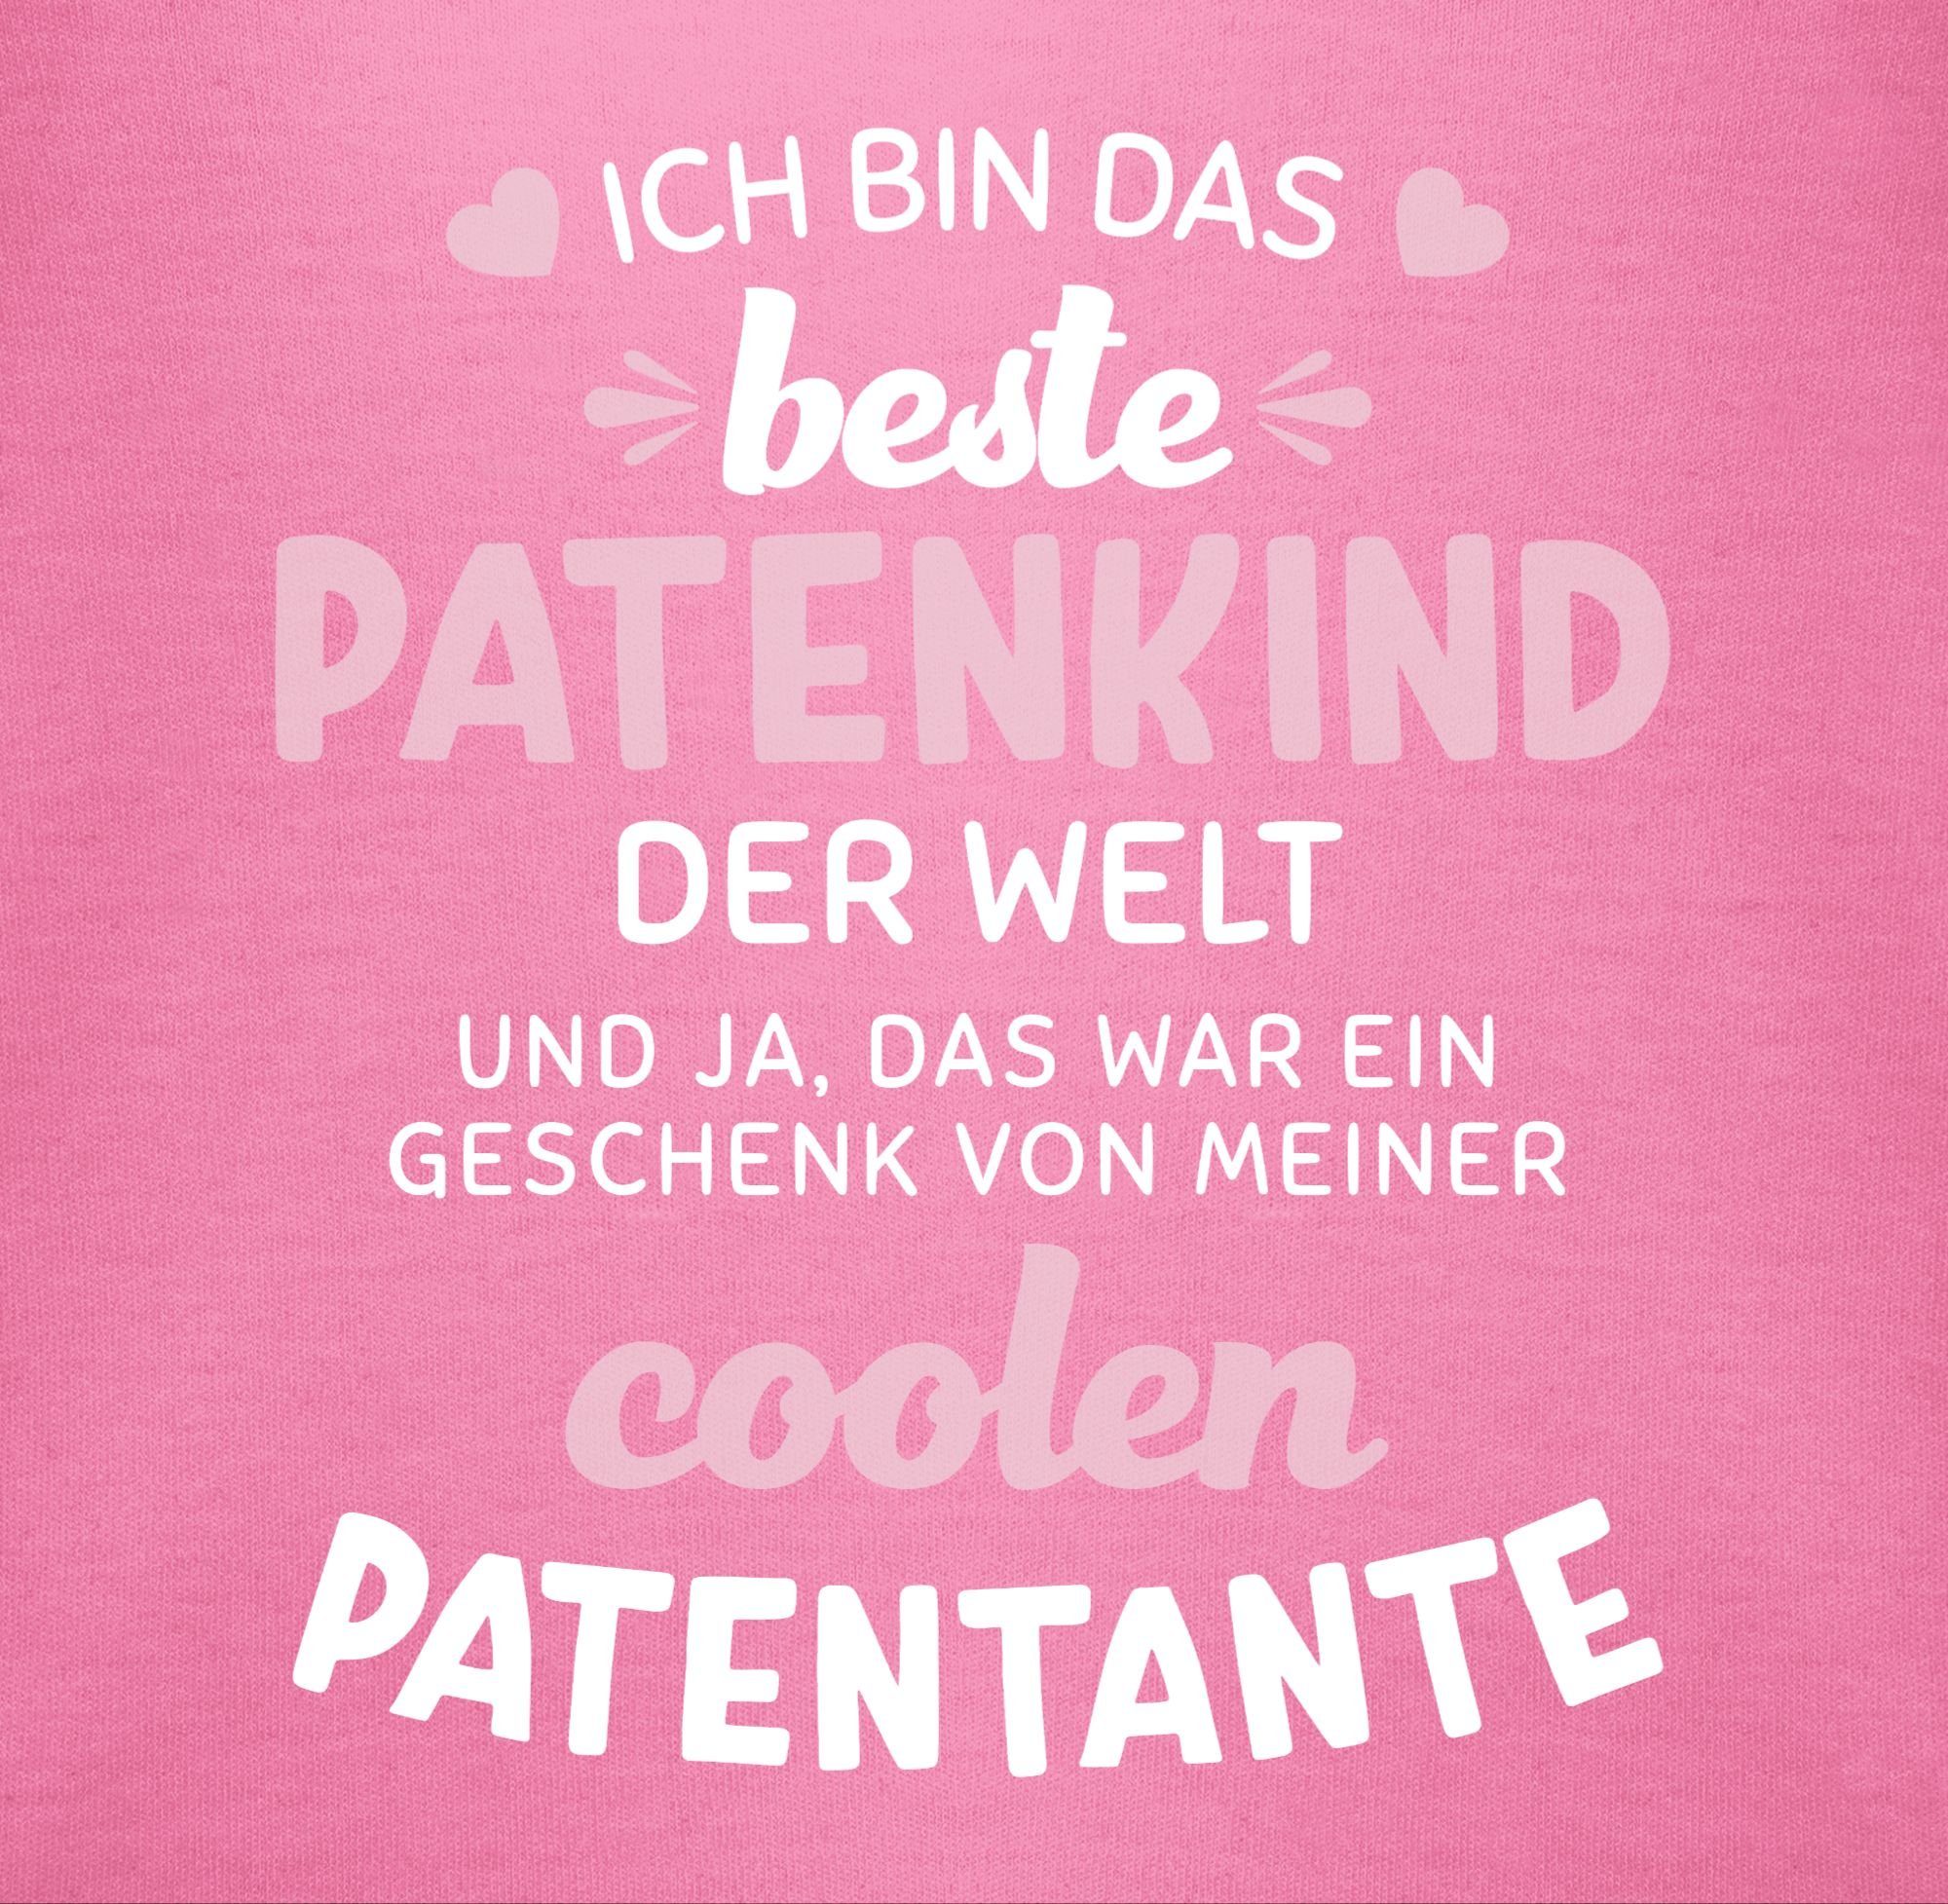 Shirtracer Shirtbody Ich bin das Patentante Baby der Patenkind Pink 1 Welt weiß/rosa beste